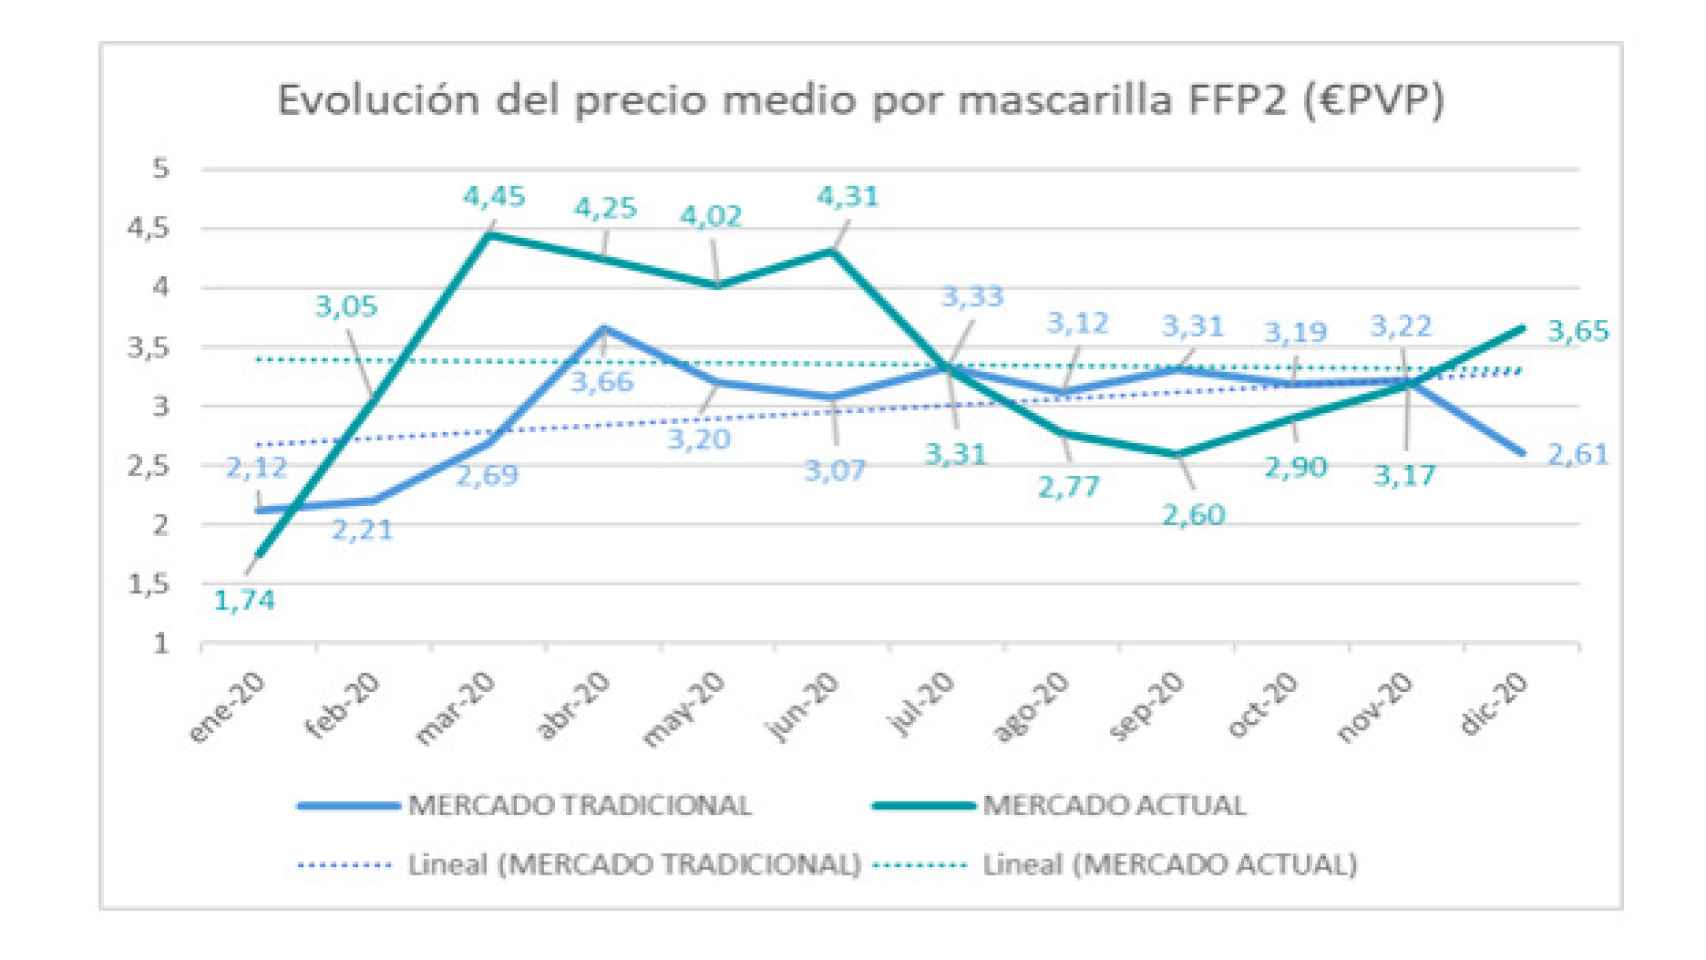 Evolución del precio medio por mascarilla FPP2. Fuente: Iqvia.